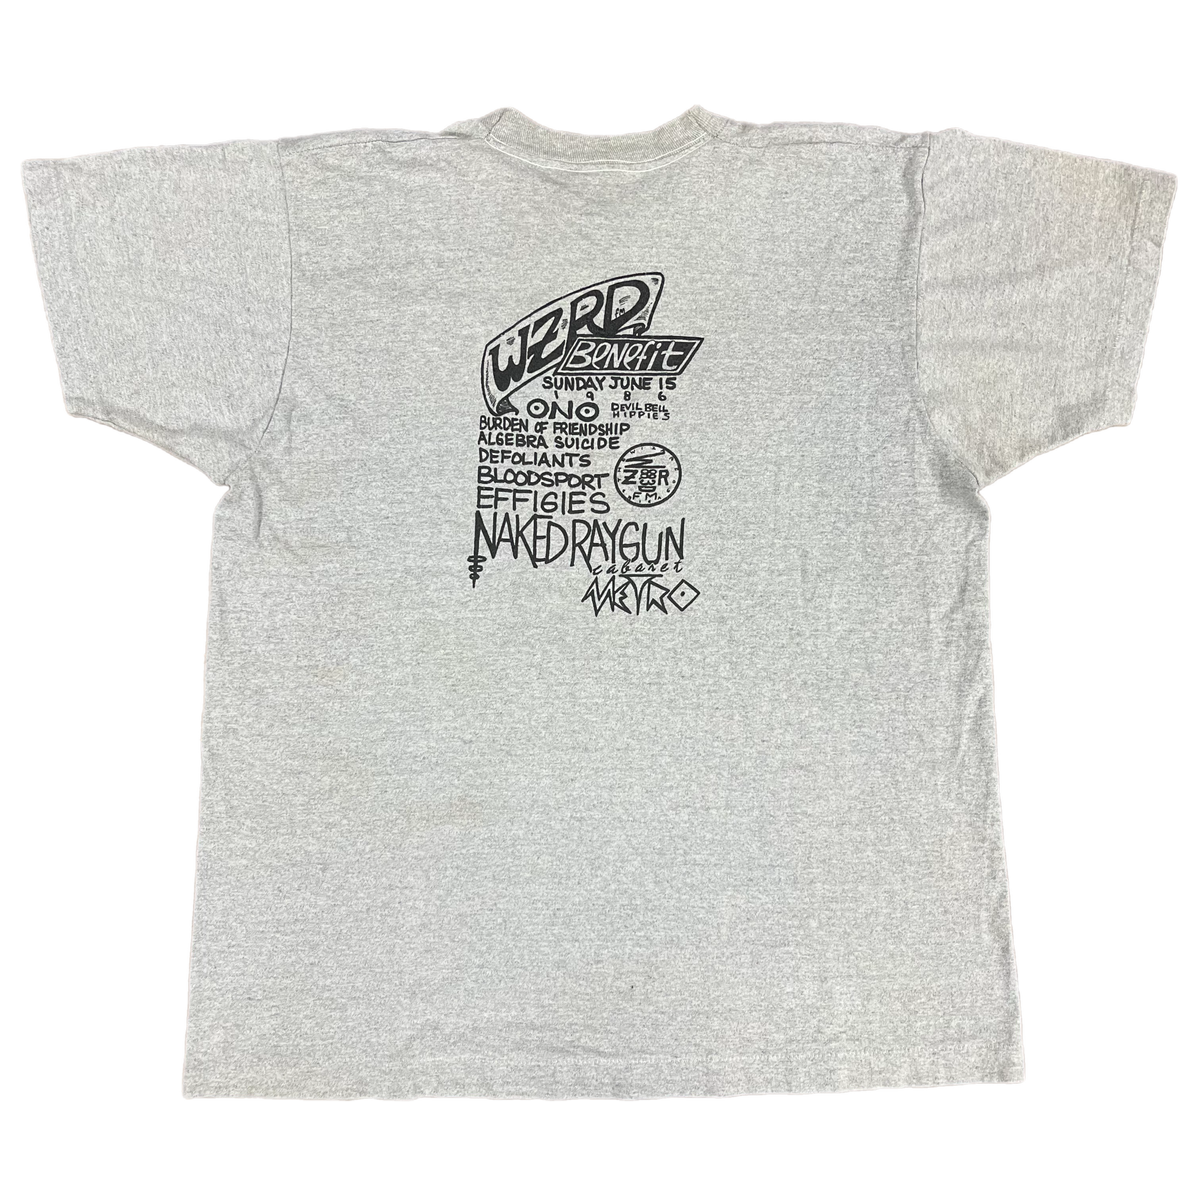 Vintage WZRD FM 88.3 &quot;Alternative Radio Chicago&quot; Benefit Show T-Shirt